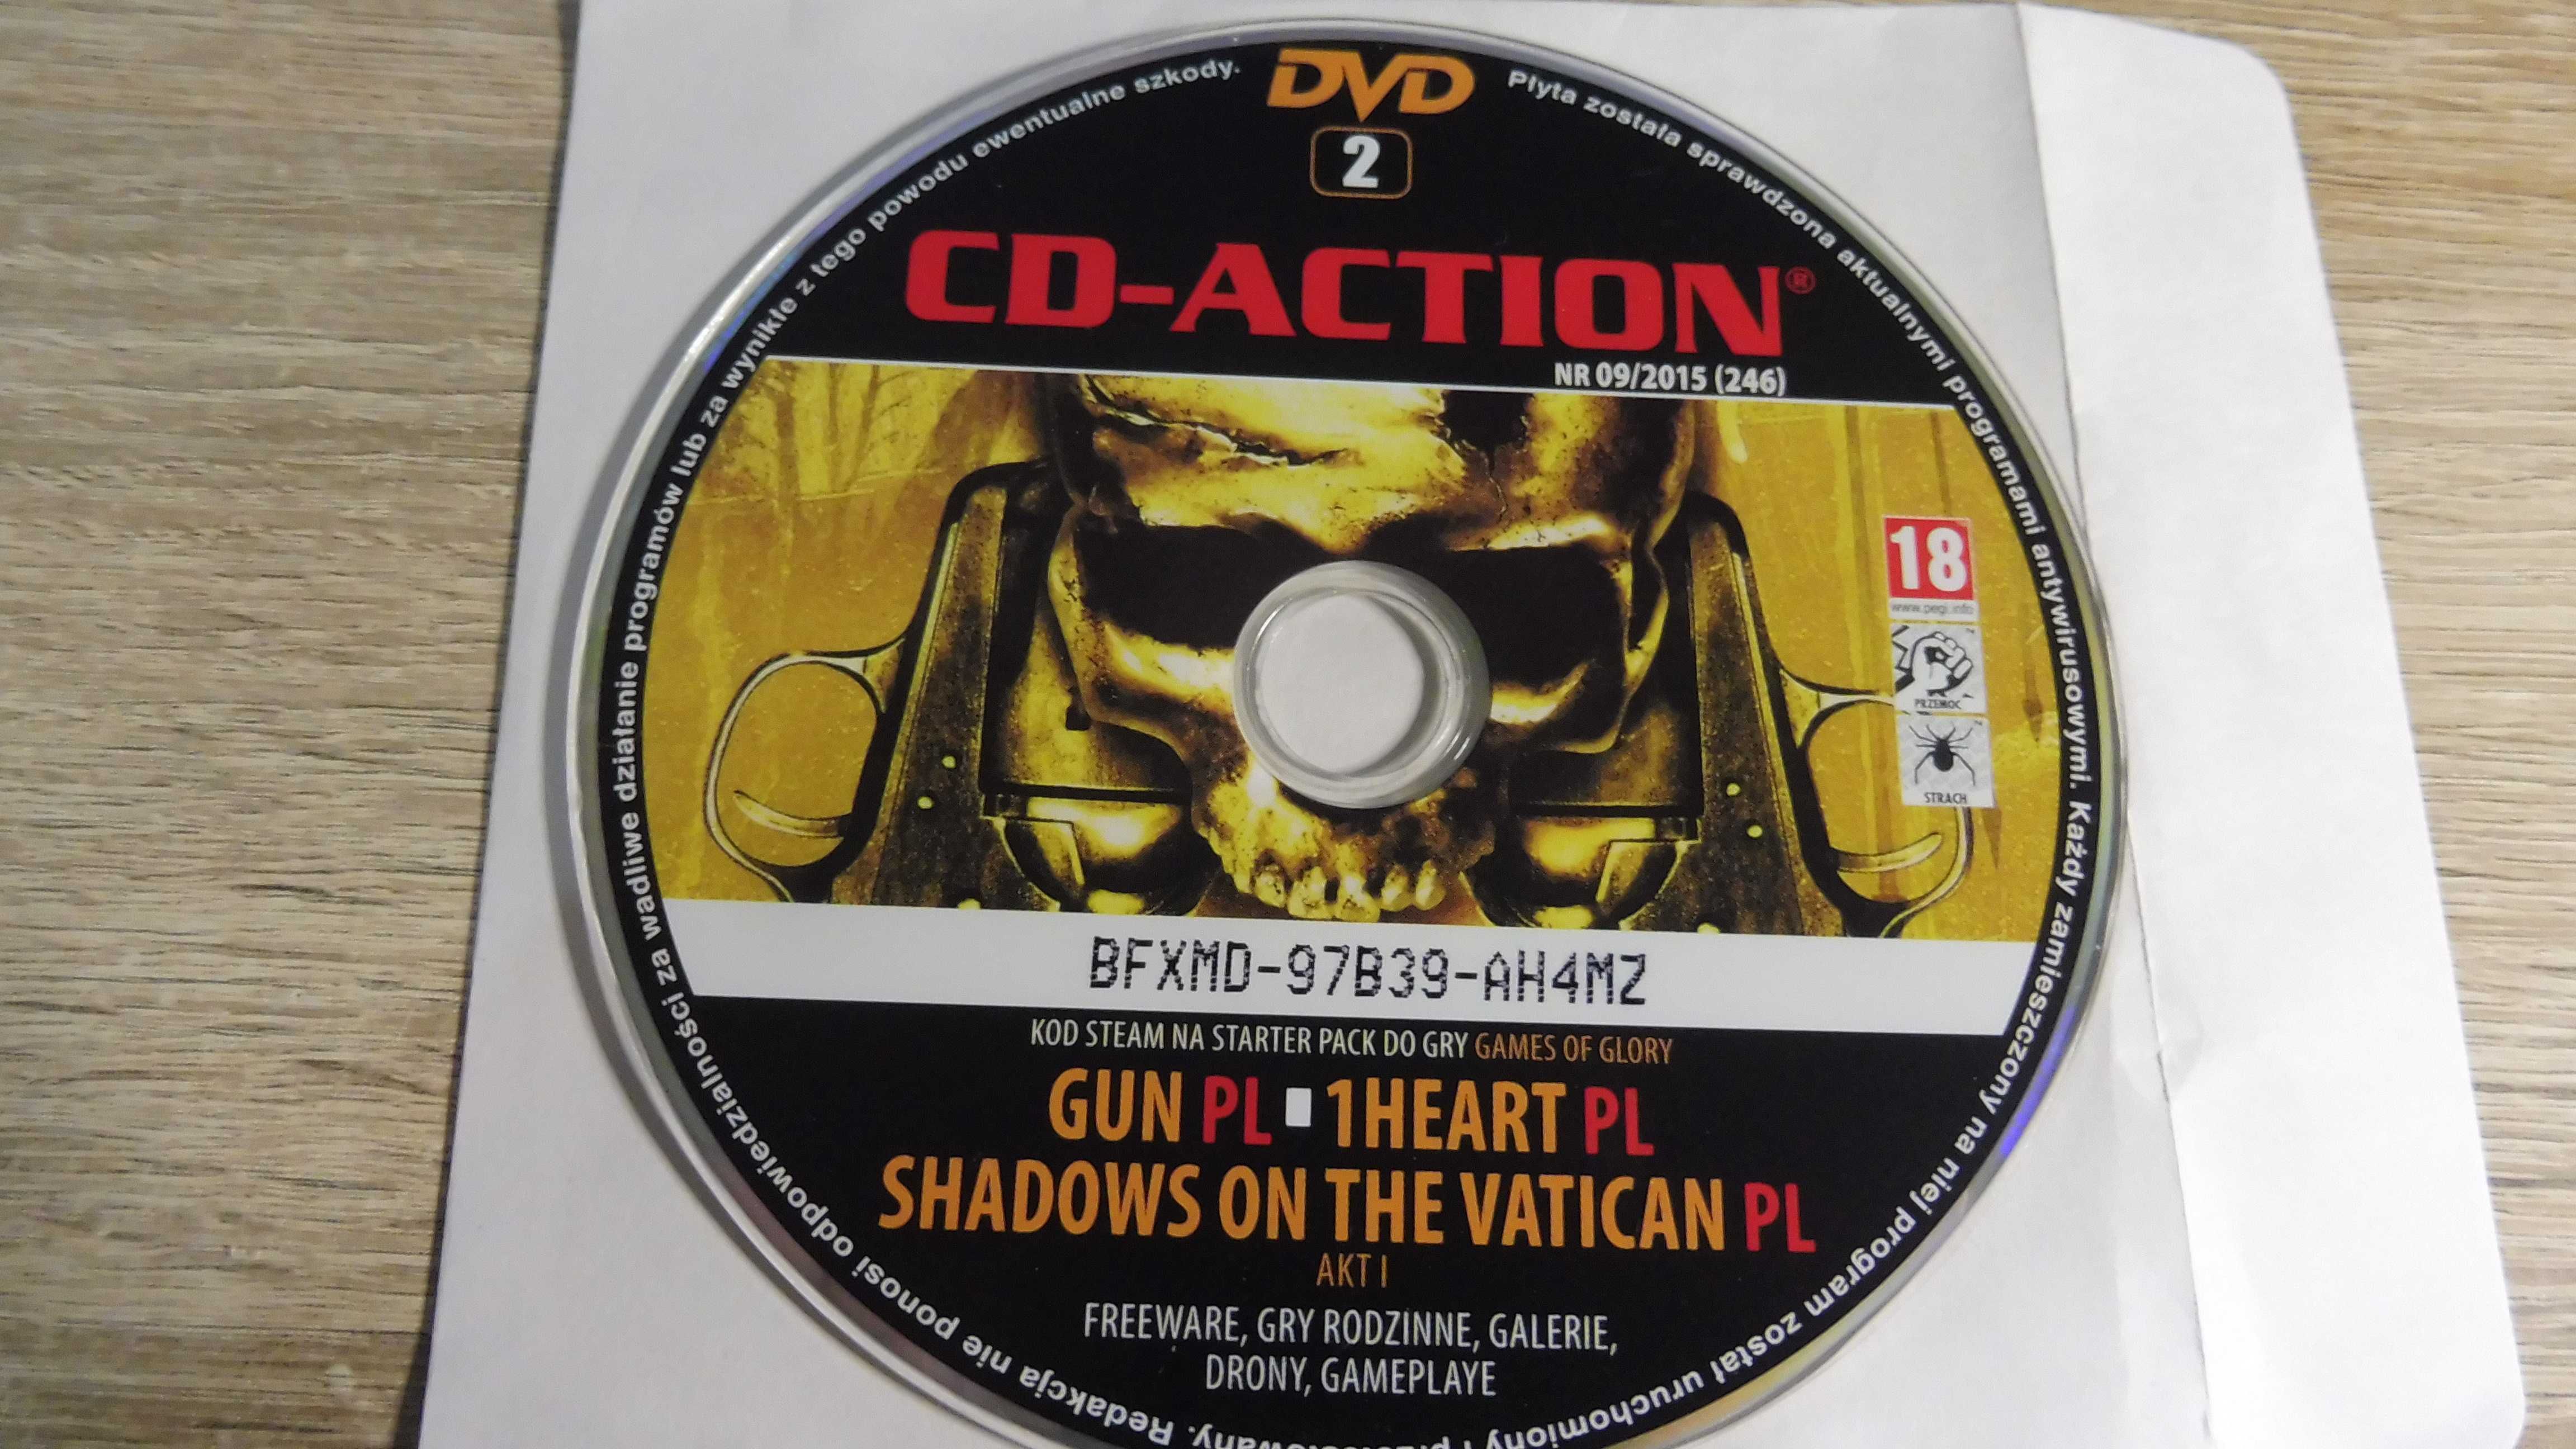 CD Action 09/2015 (246) - DVD 2 - Gun, 1Heart, Shadows of the Vatican